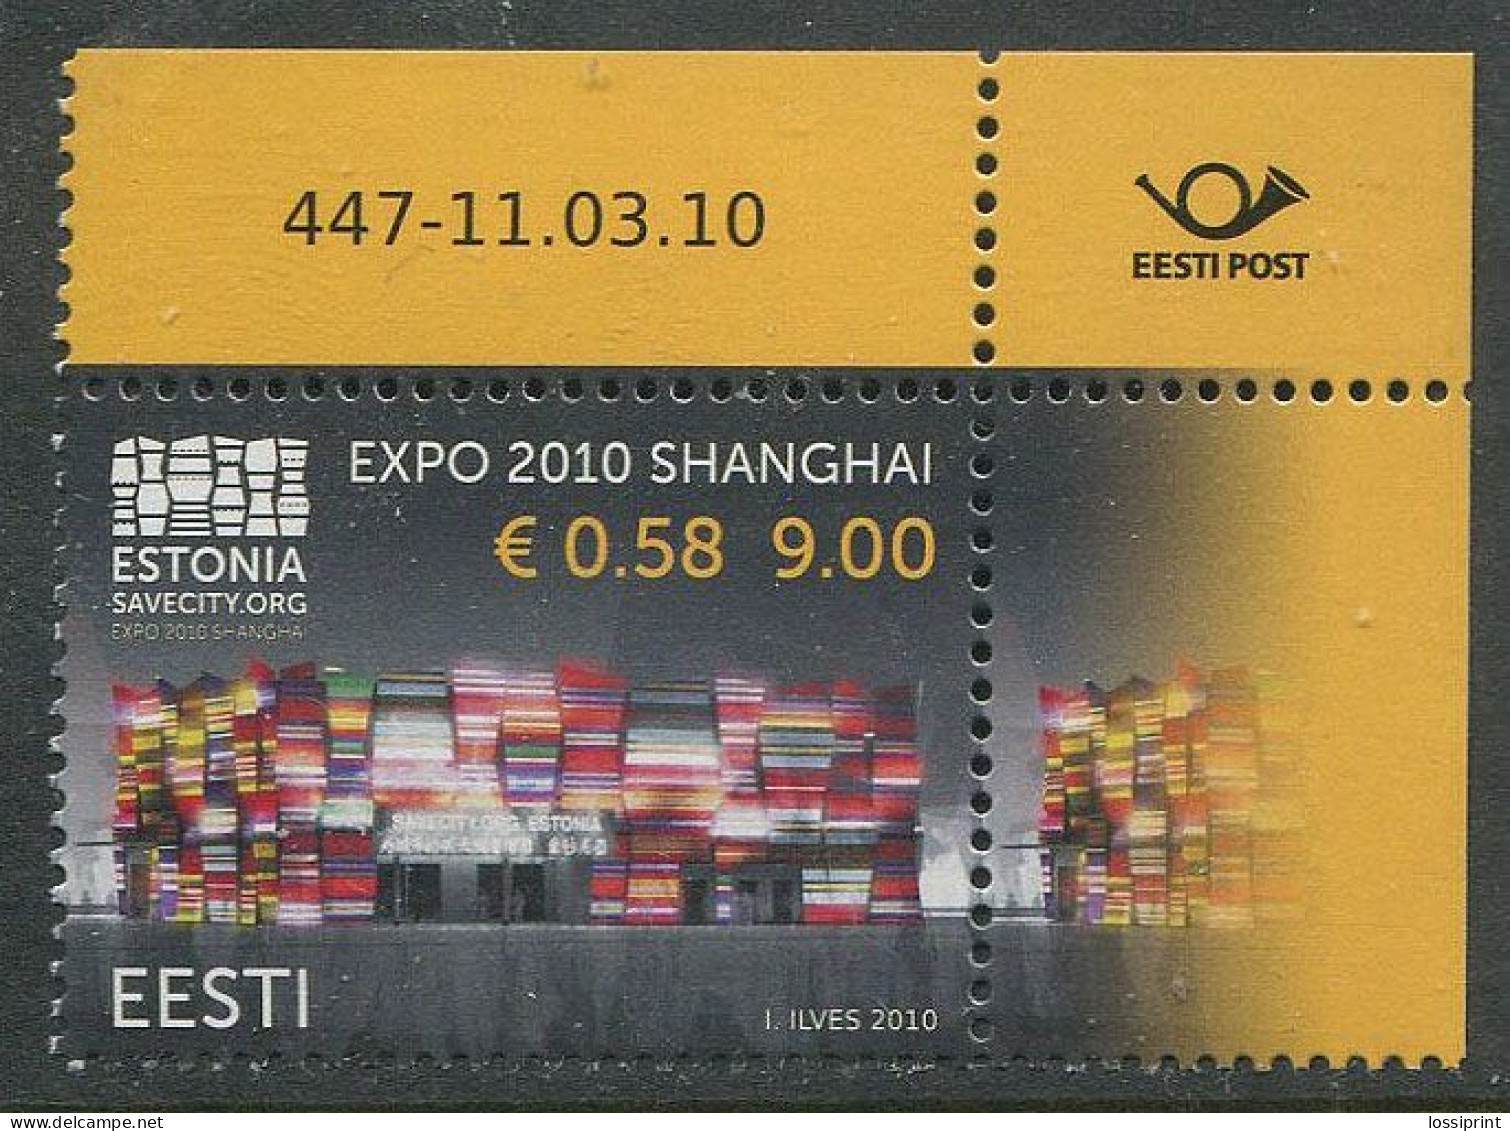 Estonia:Unused Stamp Shanghai EXPO, Corner!, 2010, MNH - Estonie